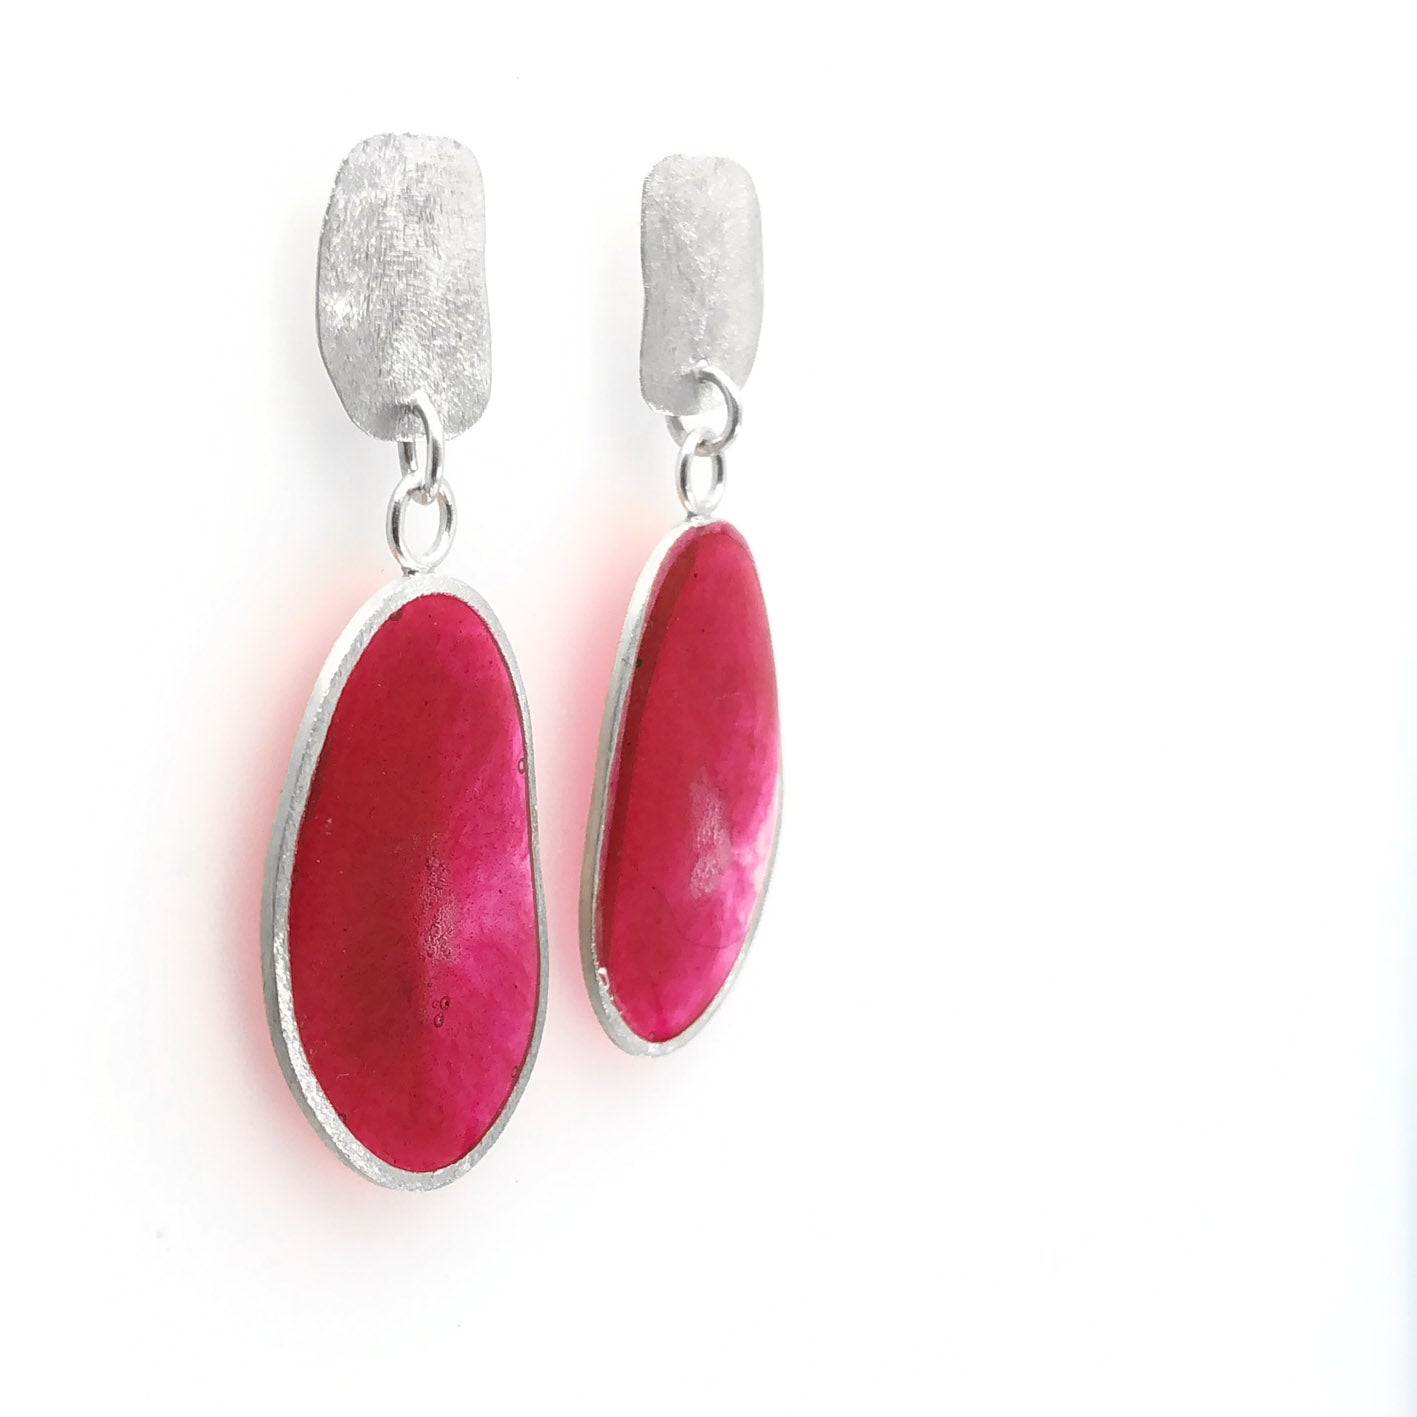 dark pink dangling earrings • 925 sterling silver and resin